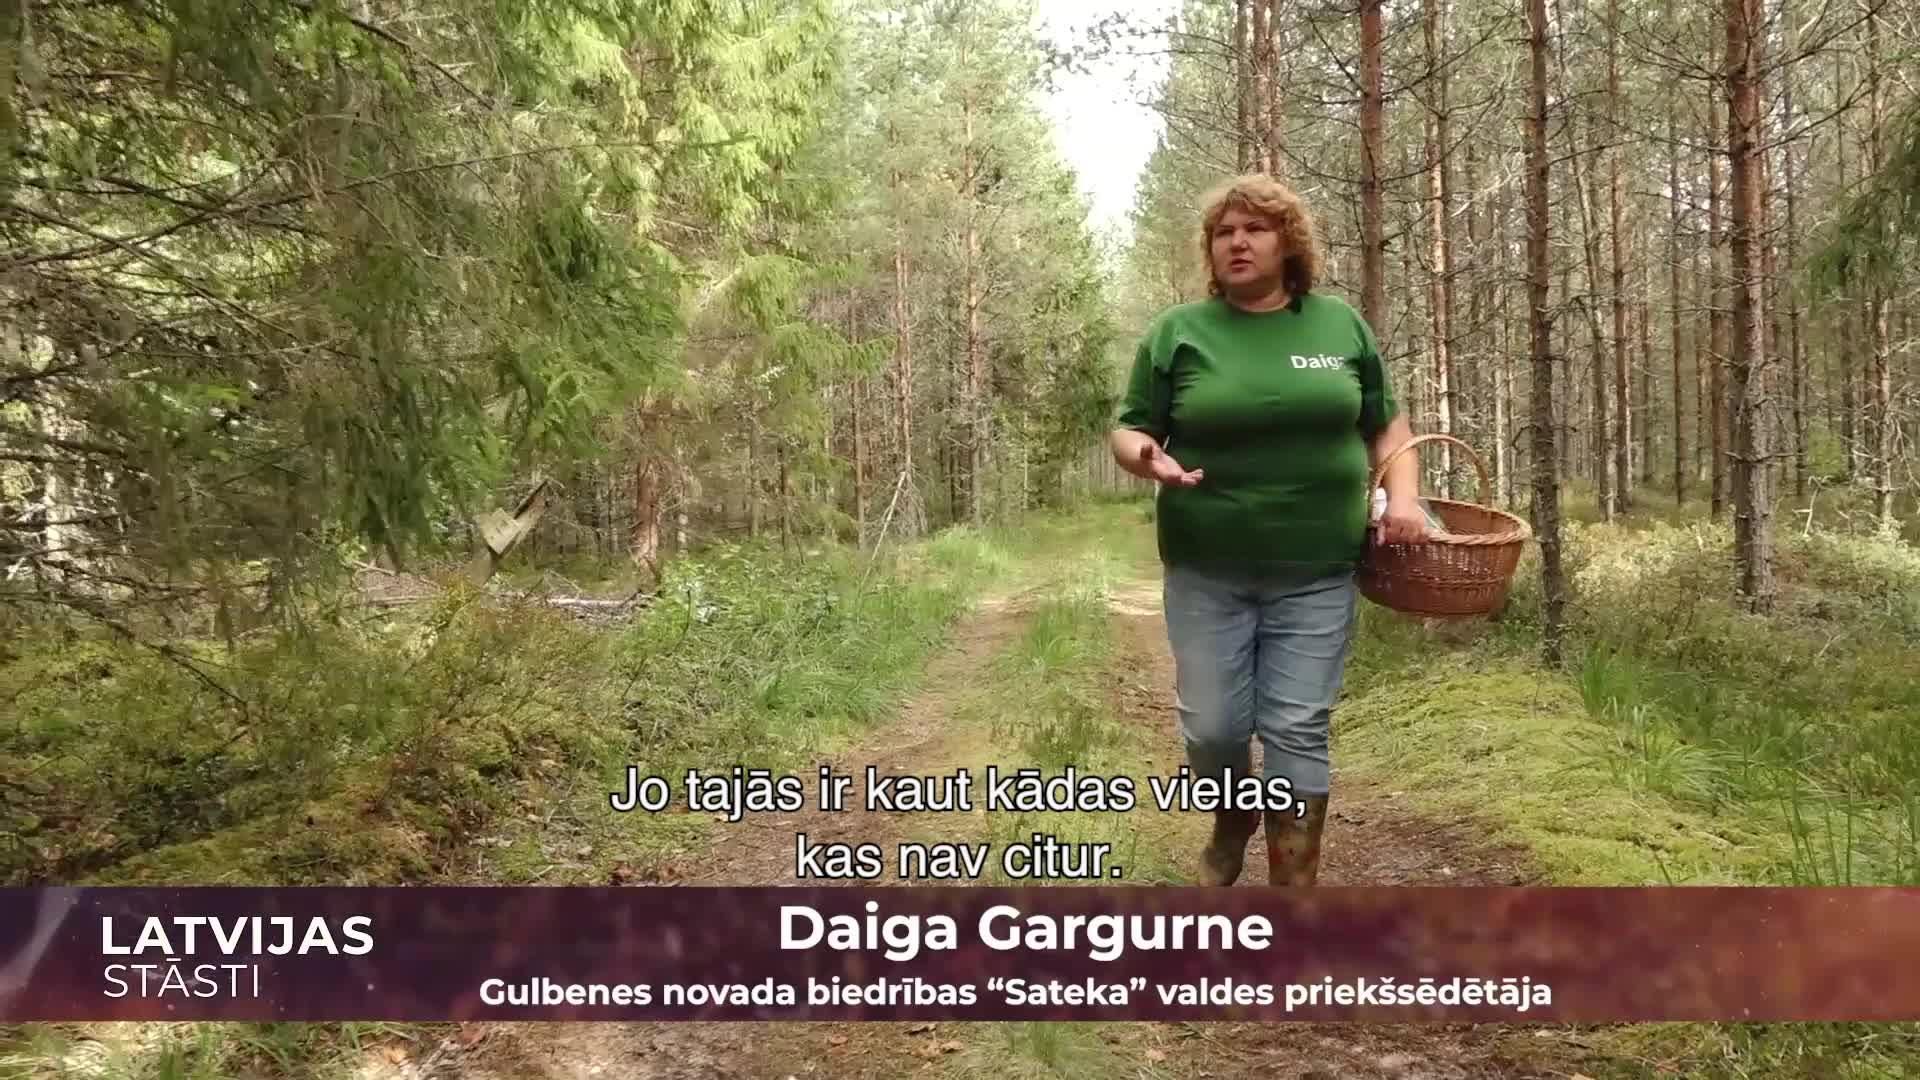 Latvijas stāsti S11E15. Daiga Gargurne